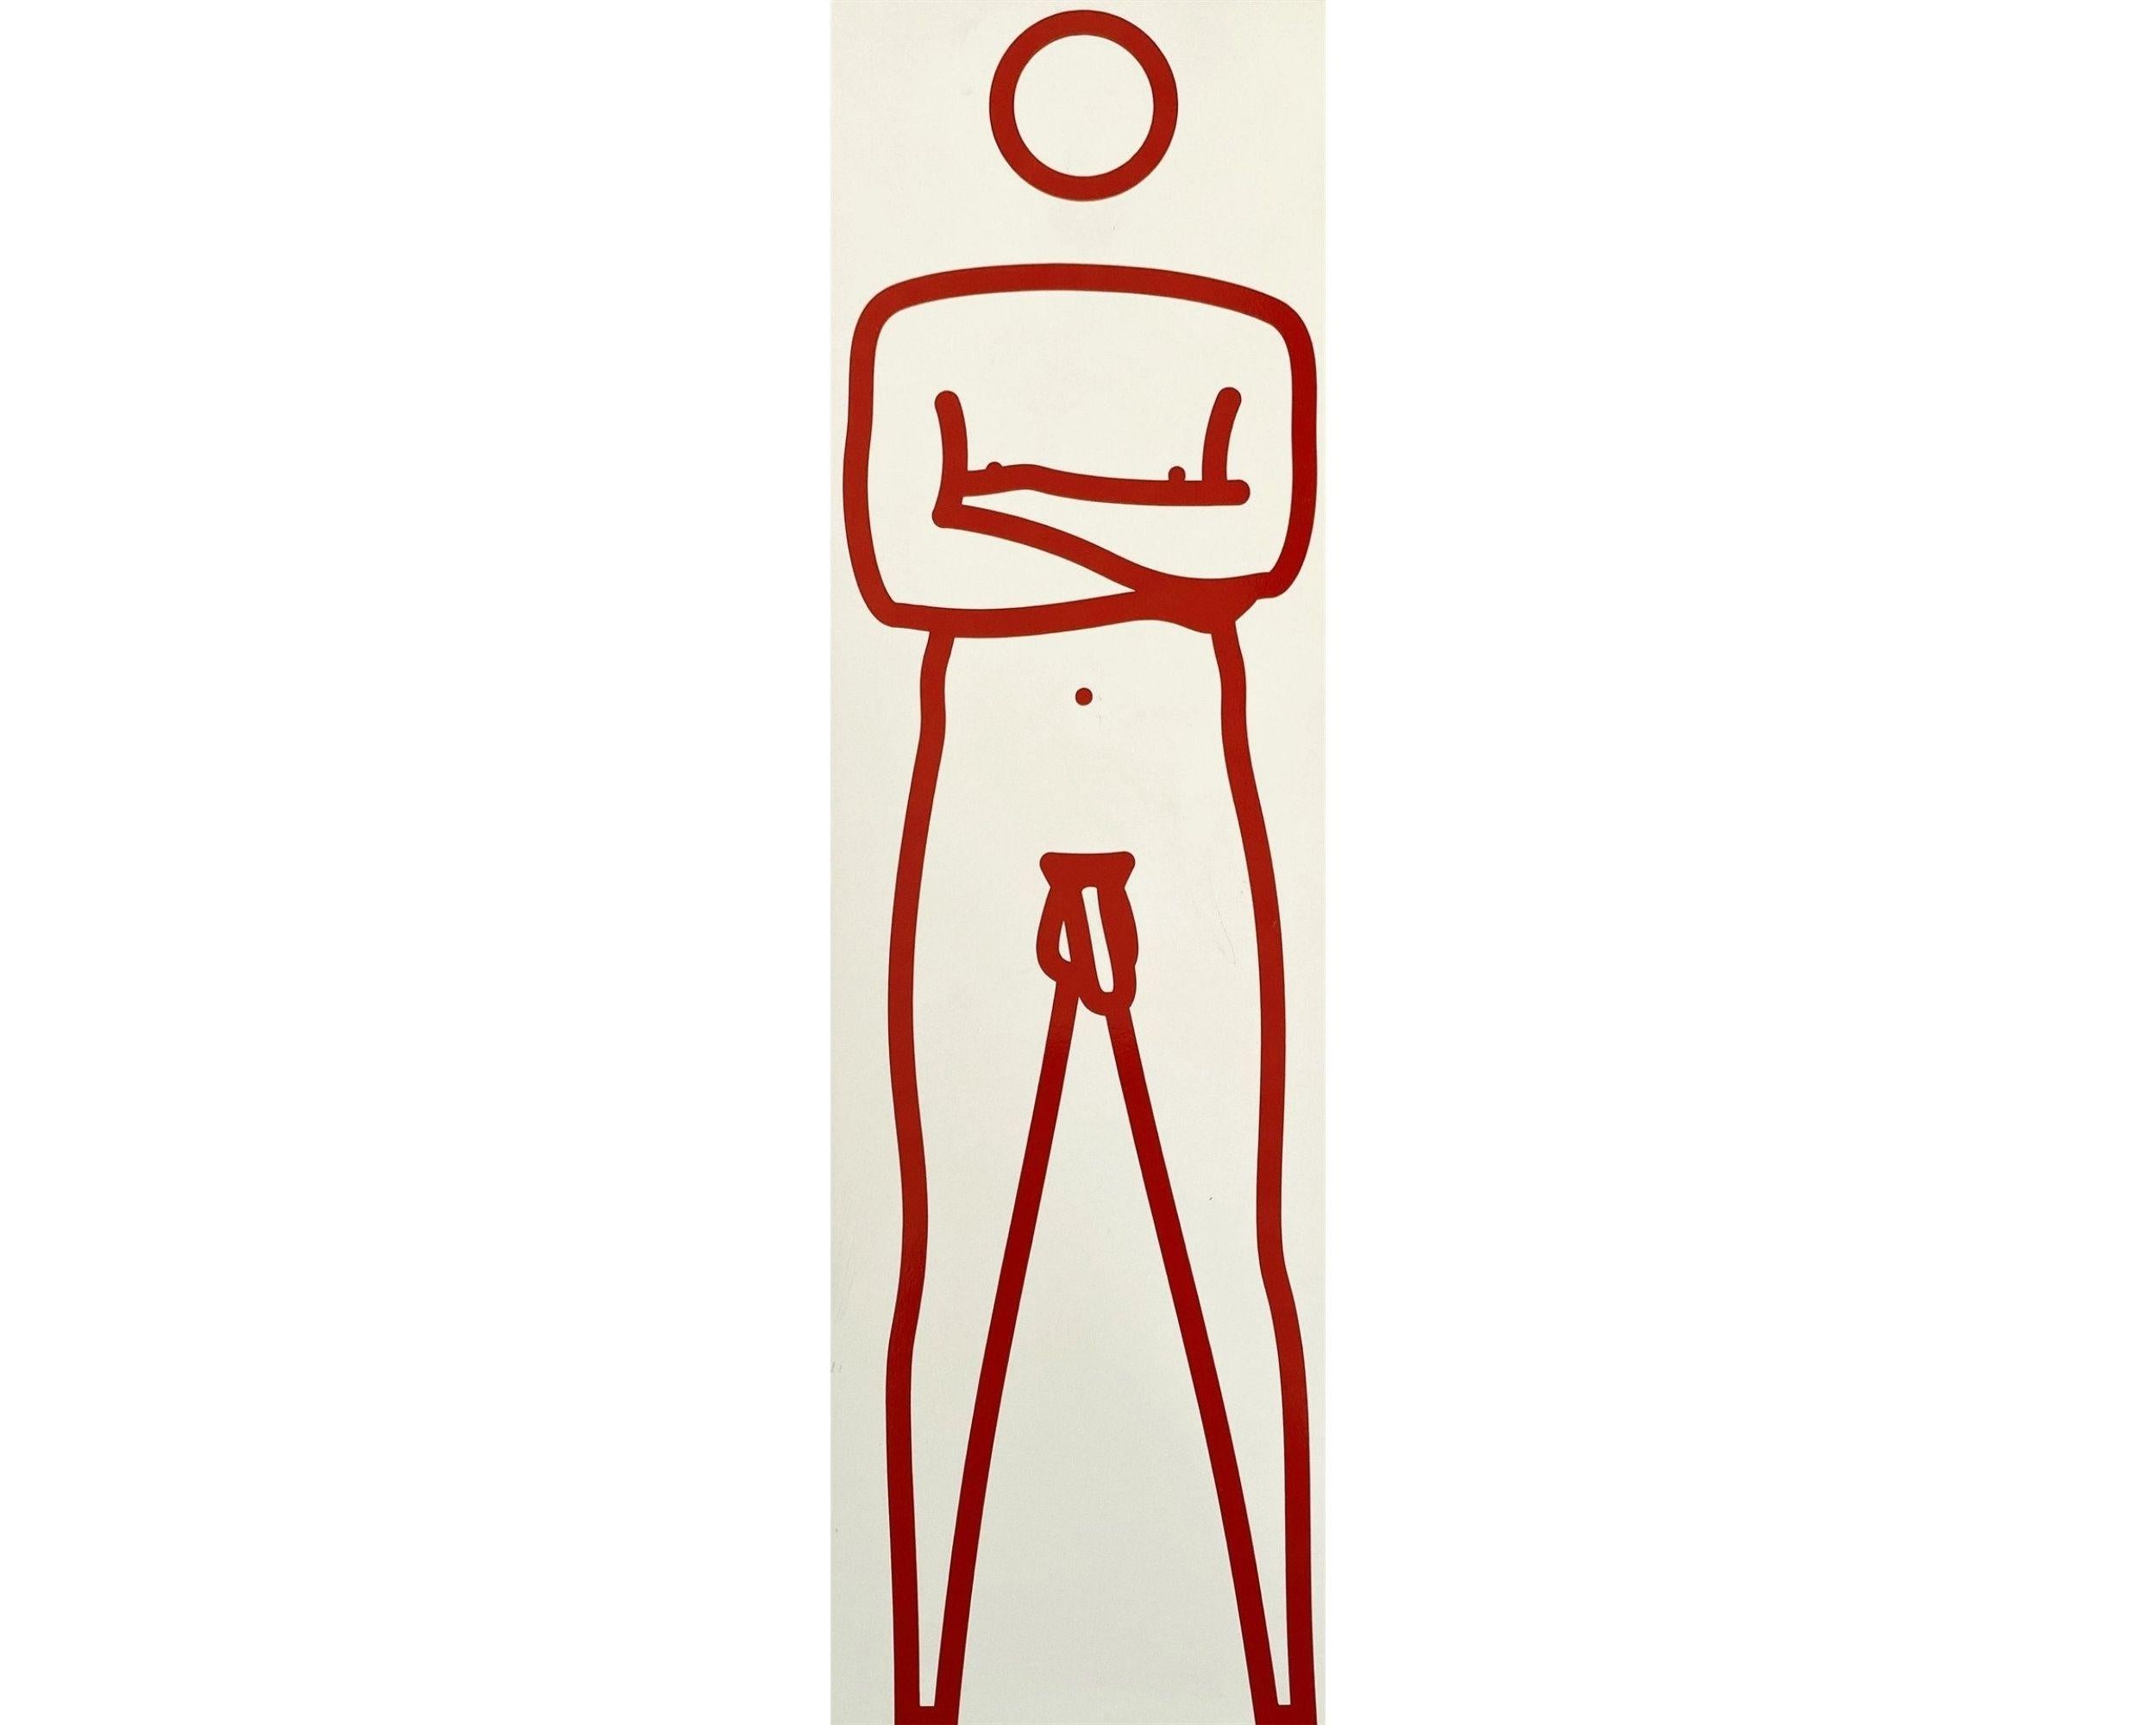 Julian nackt mit verschränkten Armen, 2000
Julian Opie

Farbe und Vinyl auf Holz, rot auf weißer Skulptur 
Auf der Unterseite mit Feder signiert
Aus der Auflage von drei Stück, jedes eine einzigartige Farbvariante
Bildhauerei: 33 × 10 × 5 cm (13 × 4